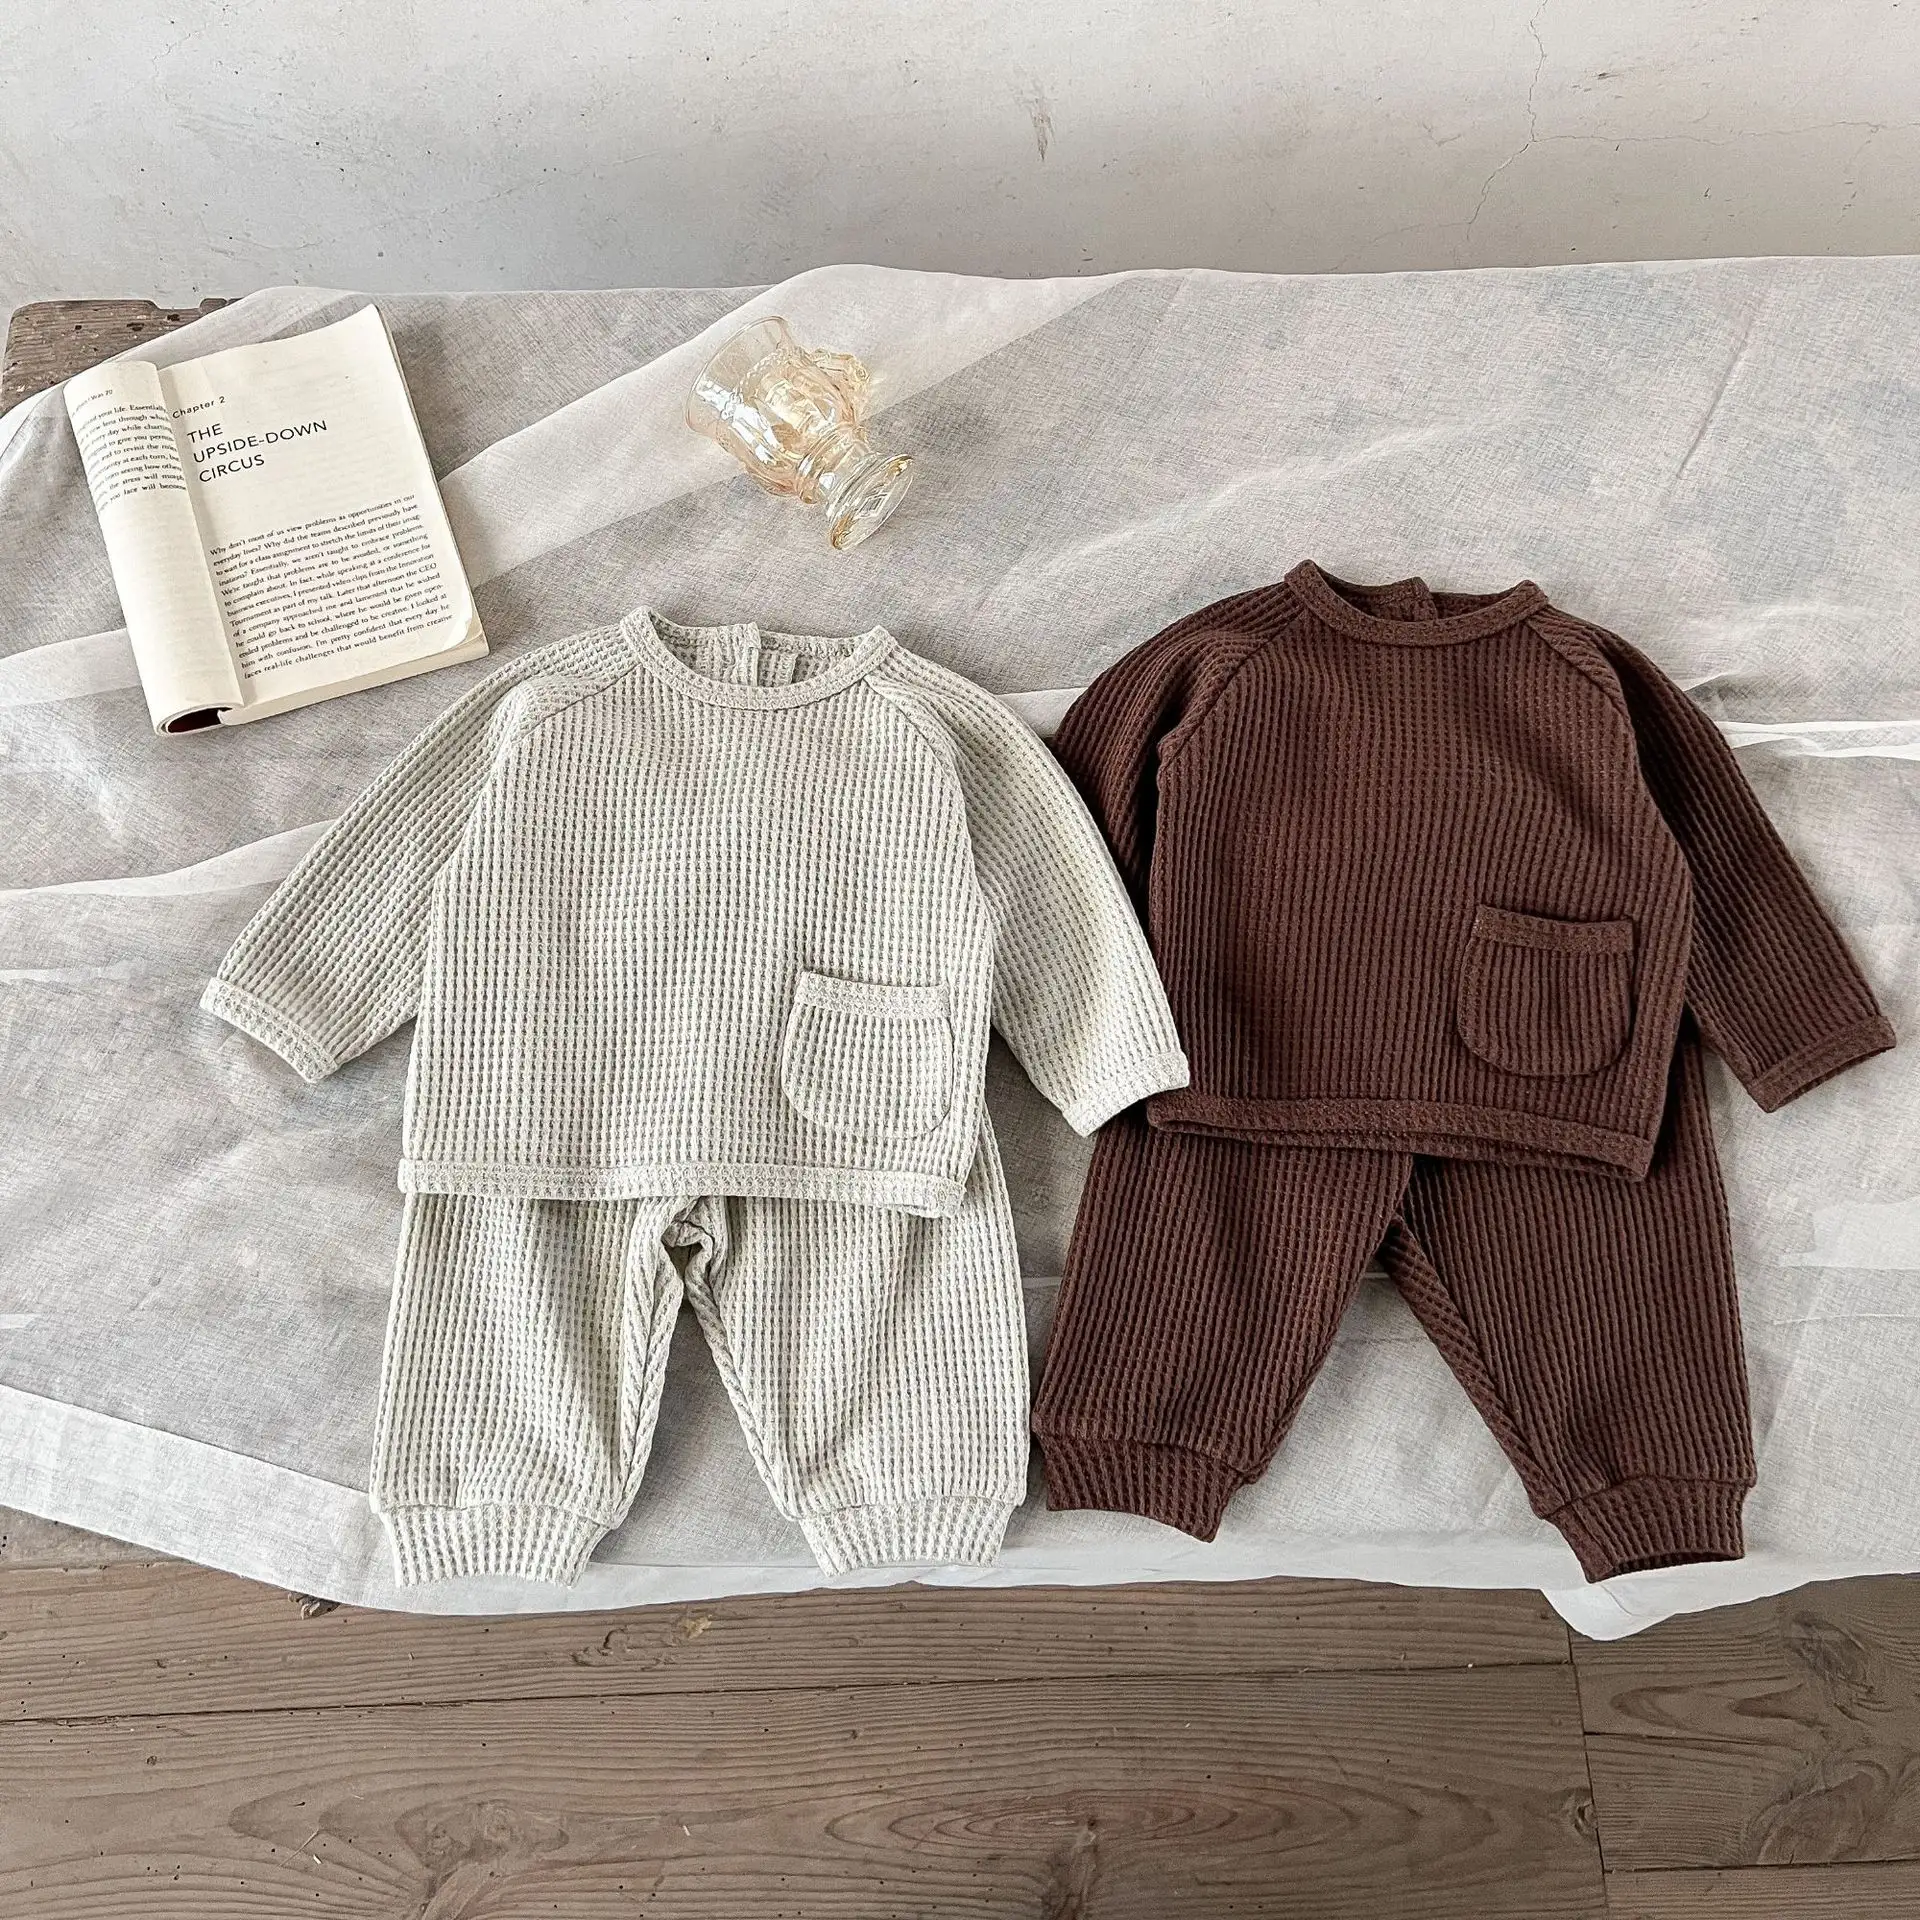 Musim Semi jatuh bayi balita anak laki-laki perempuan Waffler Pullover Sweatshirt celana 2pcs setelan pakaian pakaian baju bayi Sweatshirt set